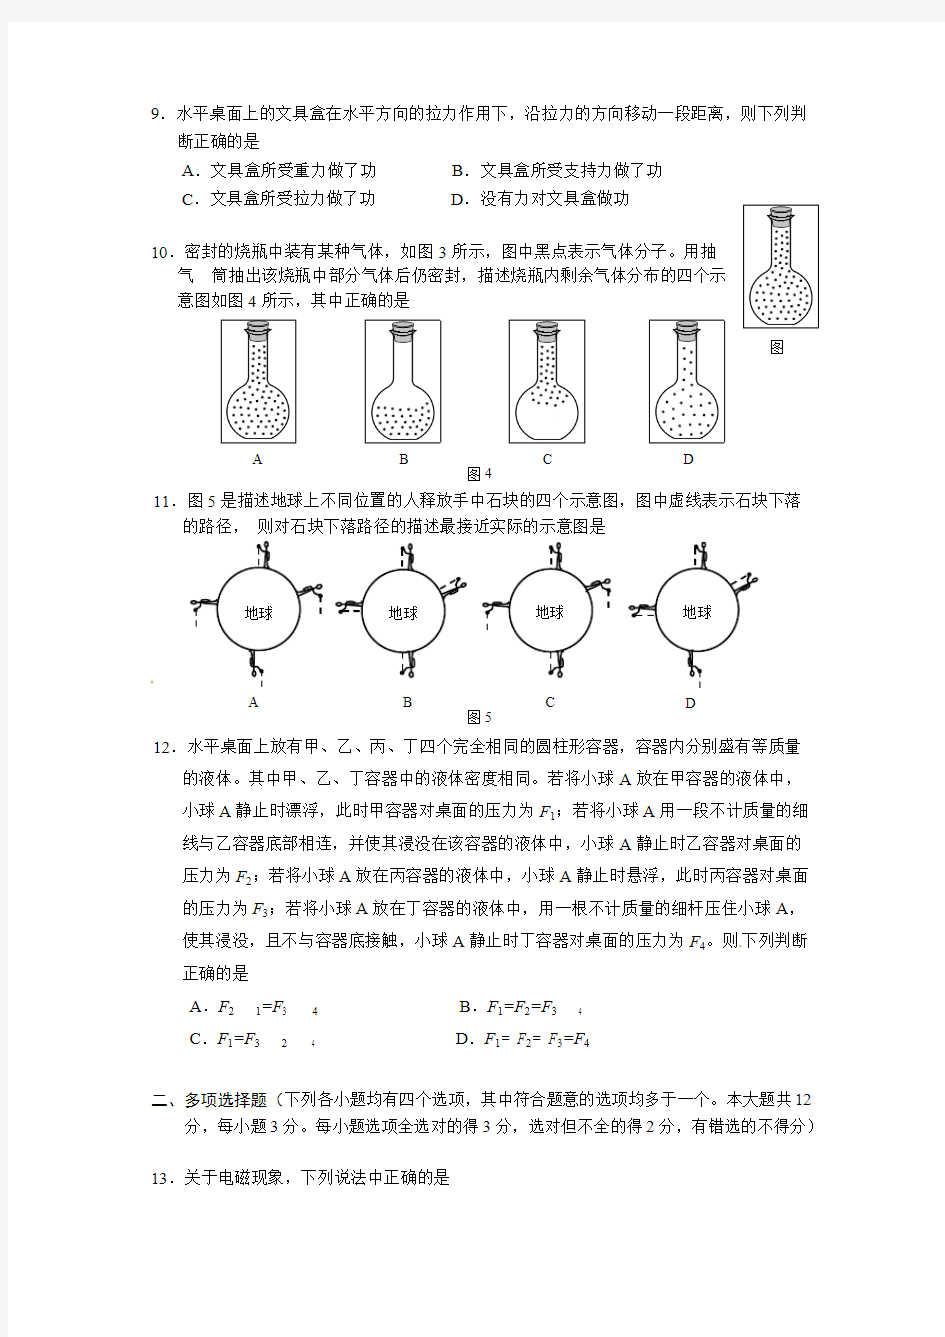 (完整)2012北京中考物理试卷及答案(完美版),推荐文档